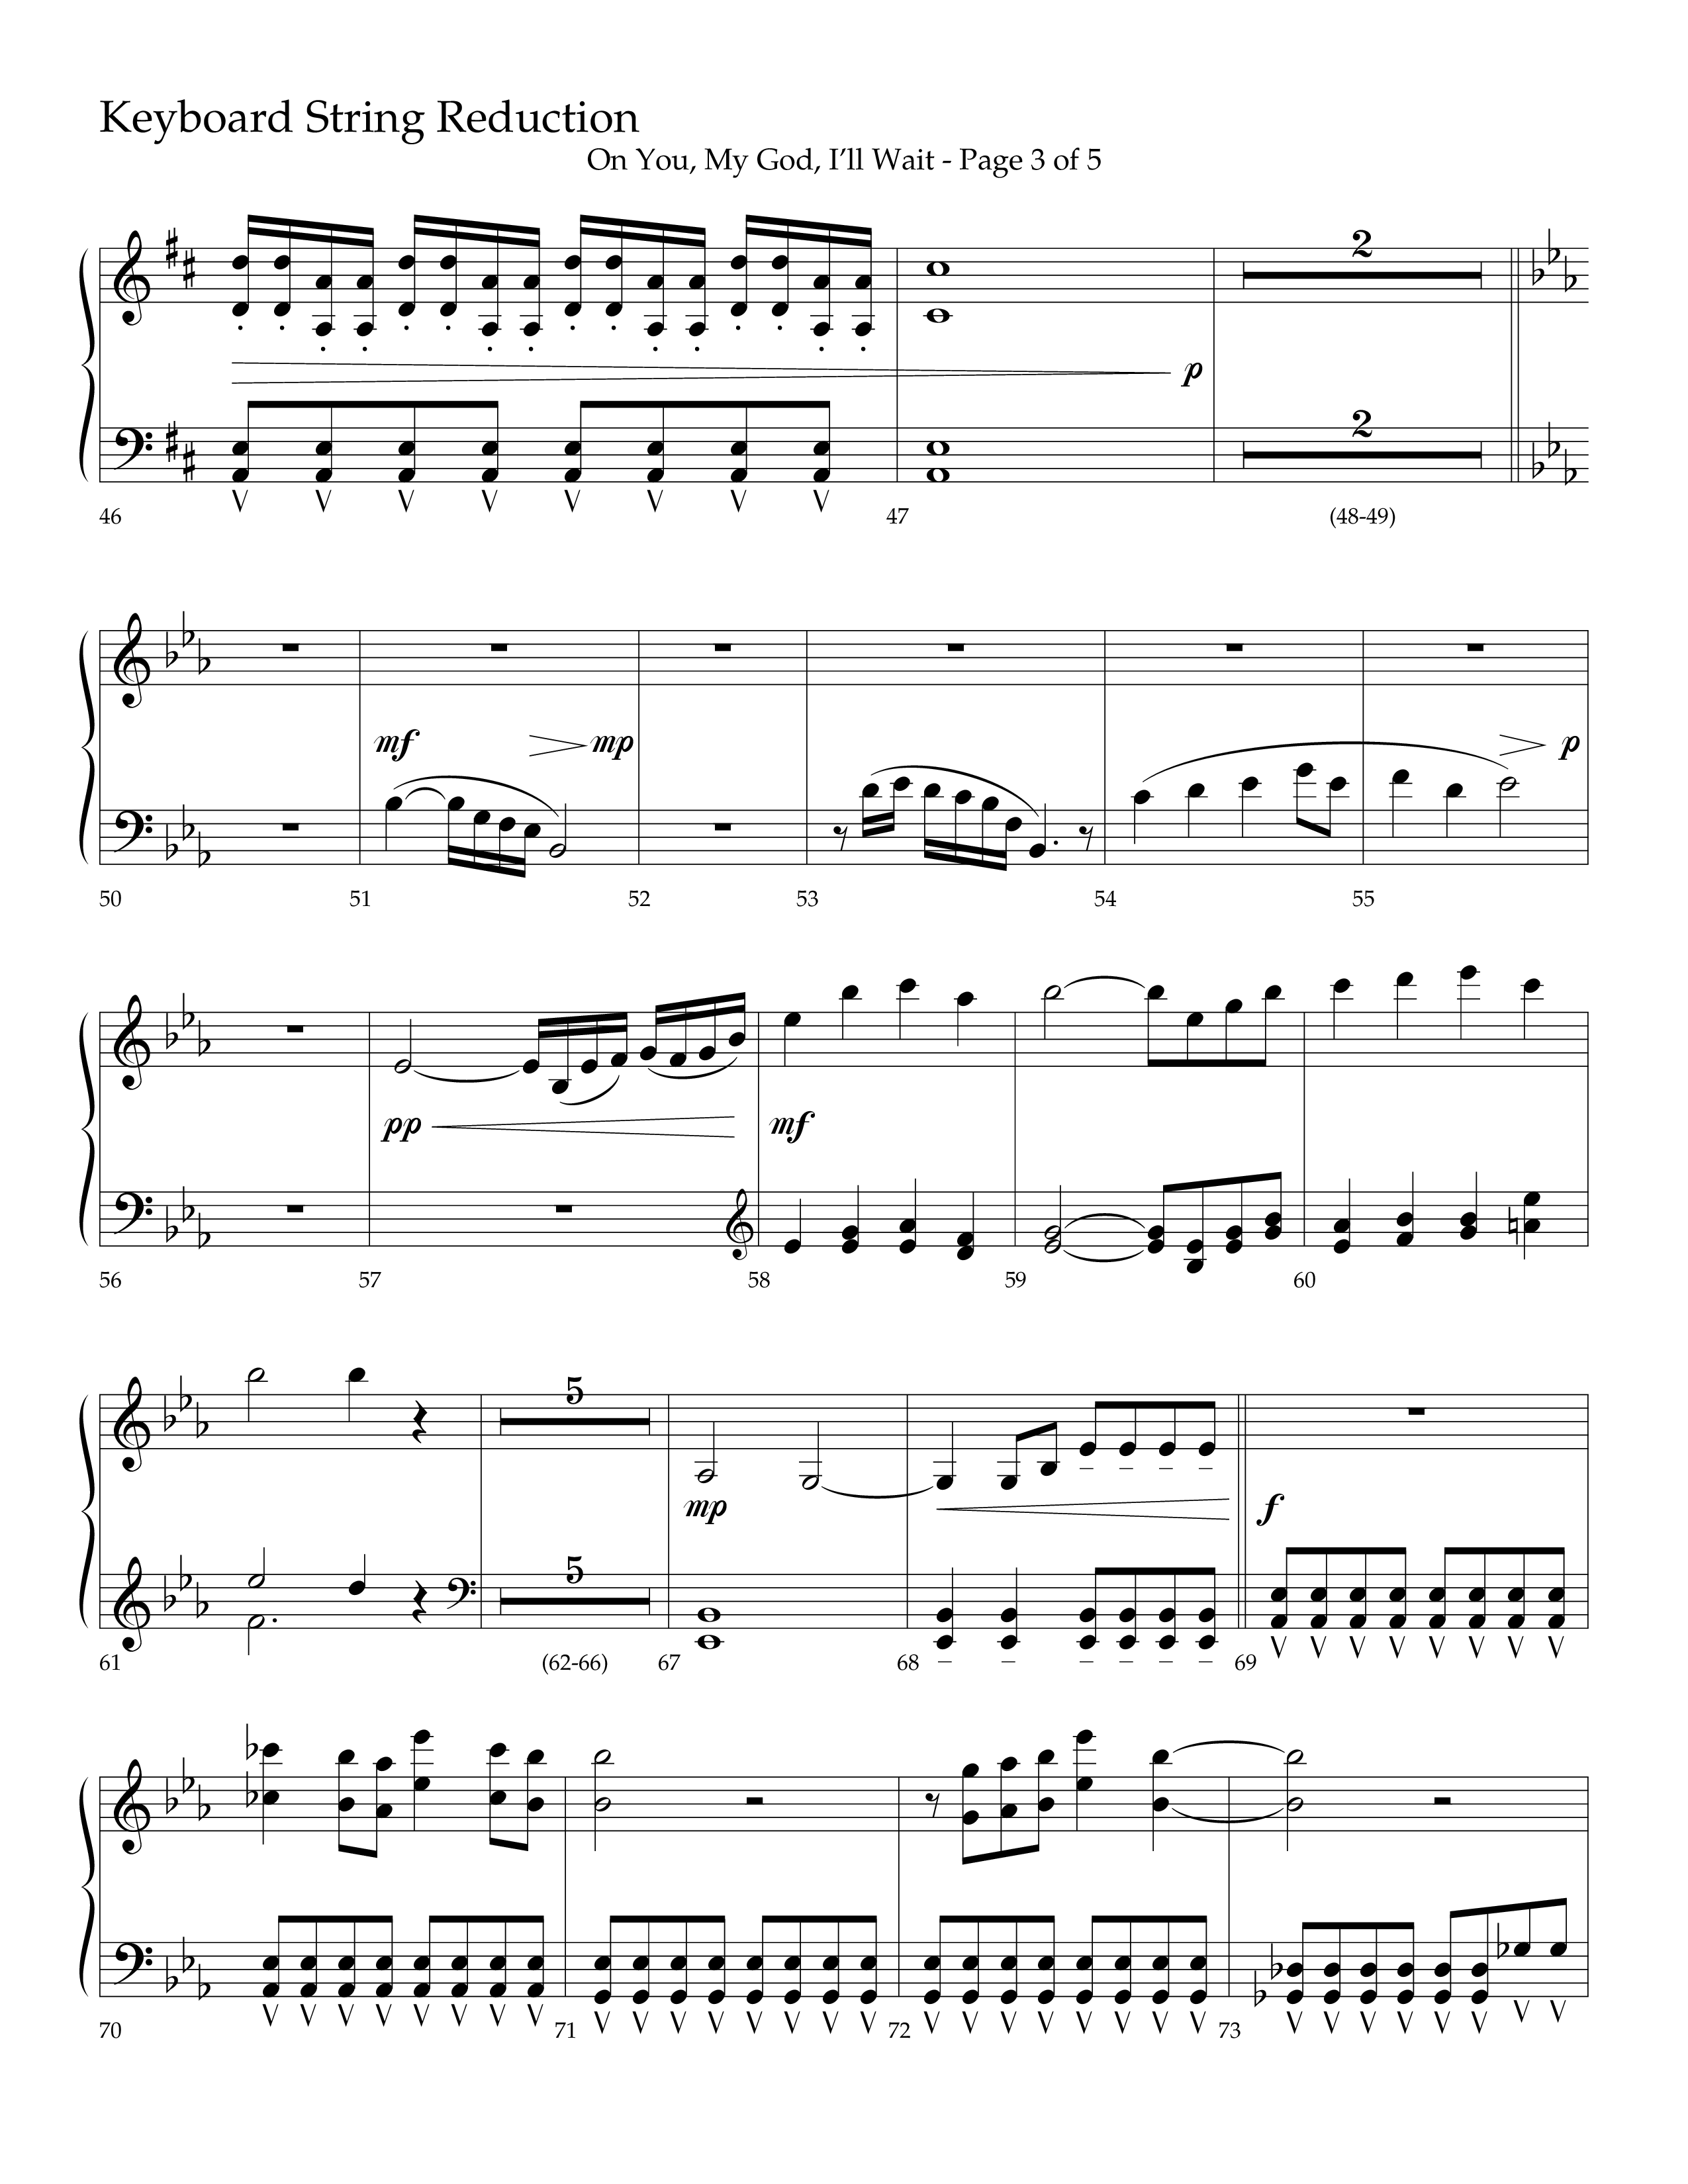 On You My God I'll Wait (Choral Anthem SATB) String Reduction (Lifeway Choral / Arr. Craig Adams / Arr. Mike Harland)